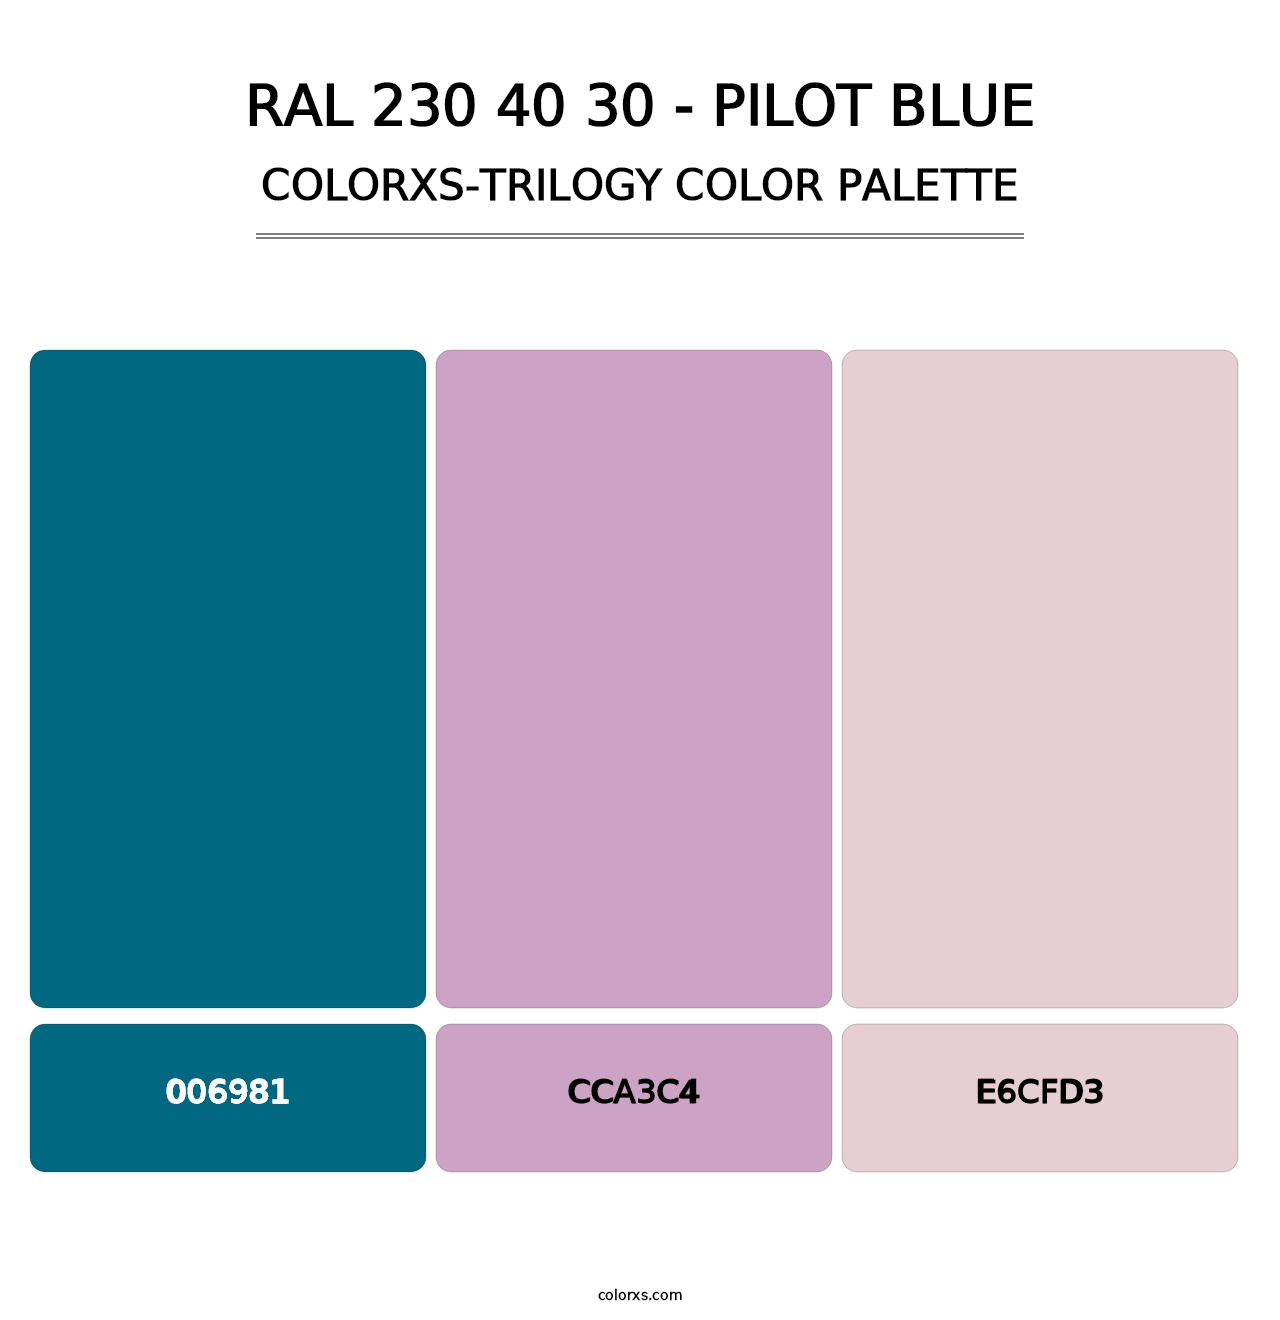 RAL 230 40 30 - Pilot Blue - Colorxs Trilogy Palette